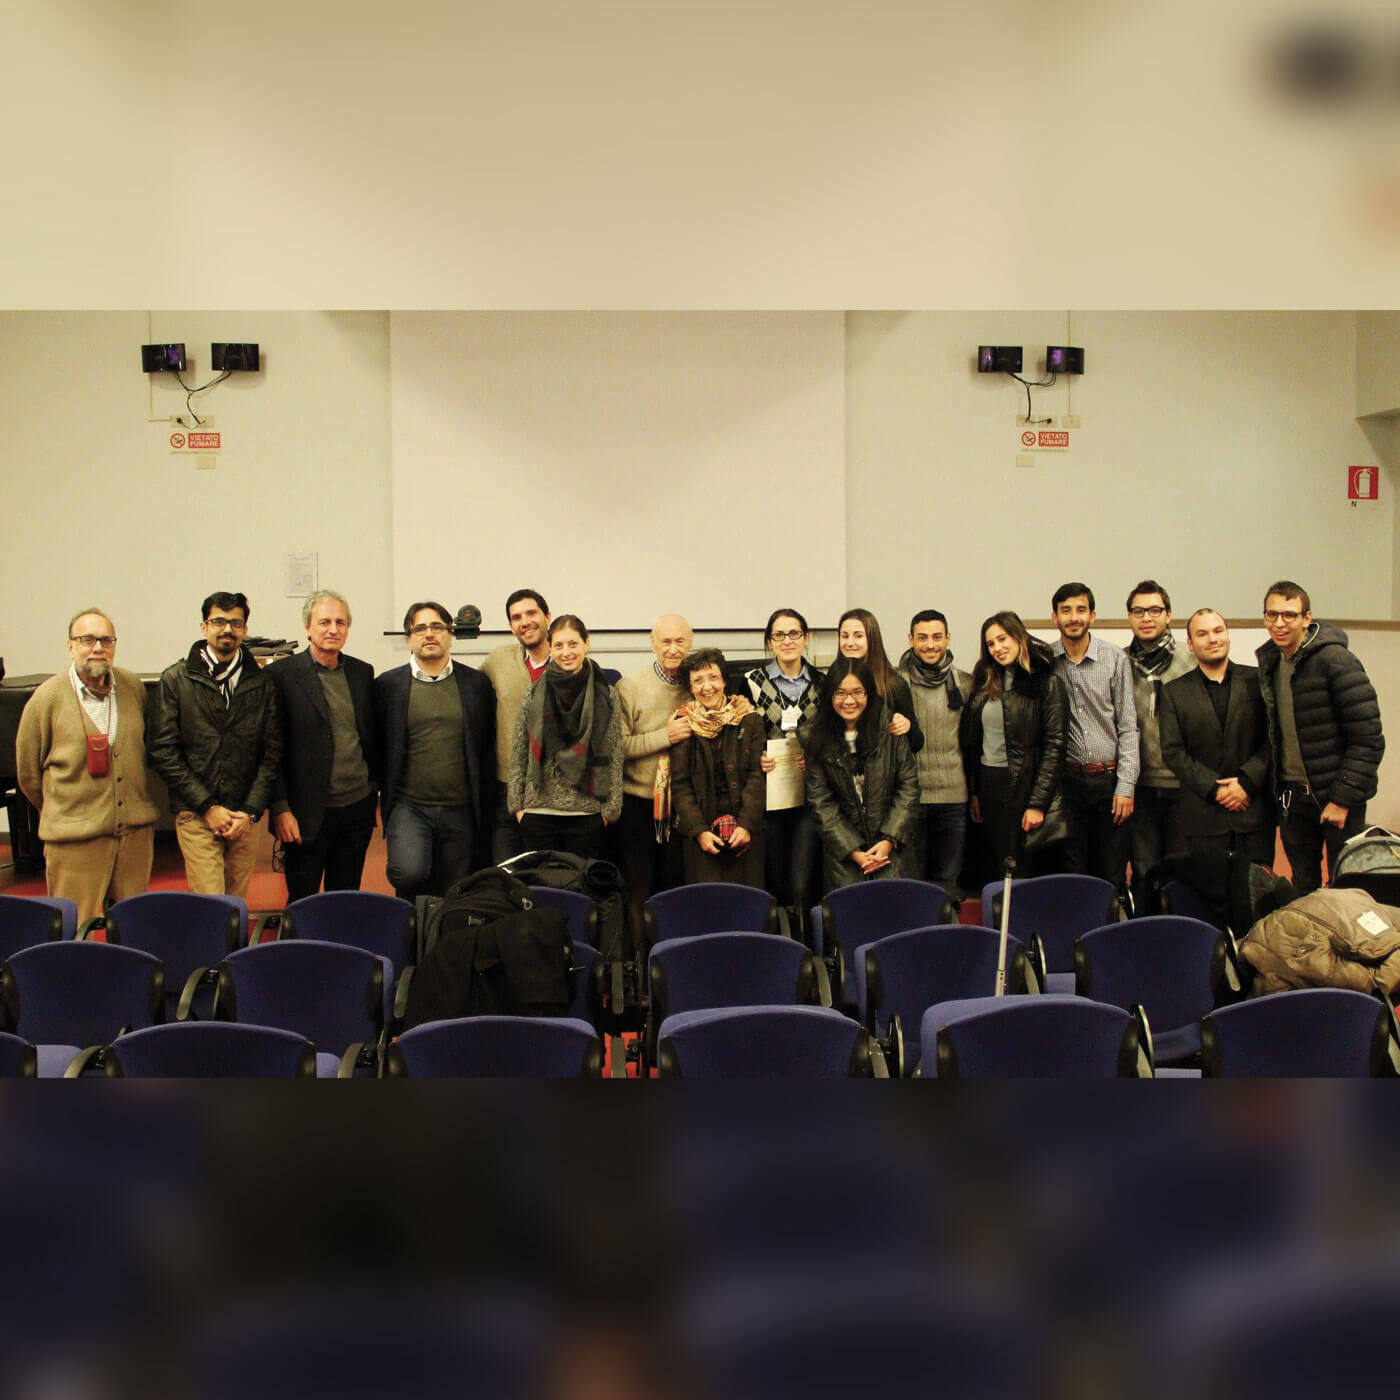 15 giovani studiosi da tutto il mondo a Trieste per le Giornate di studio su teoria dei giochi e complessità